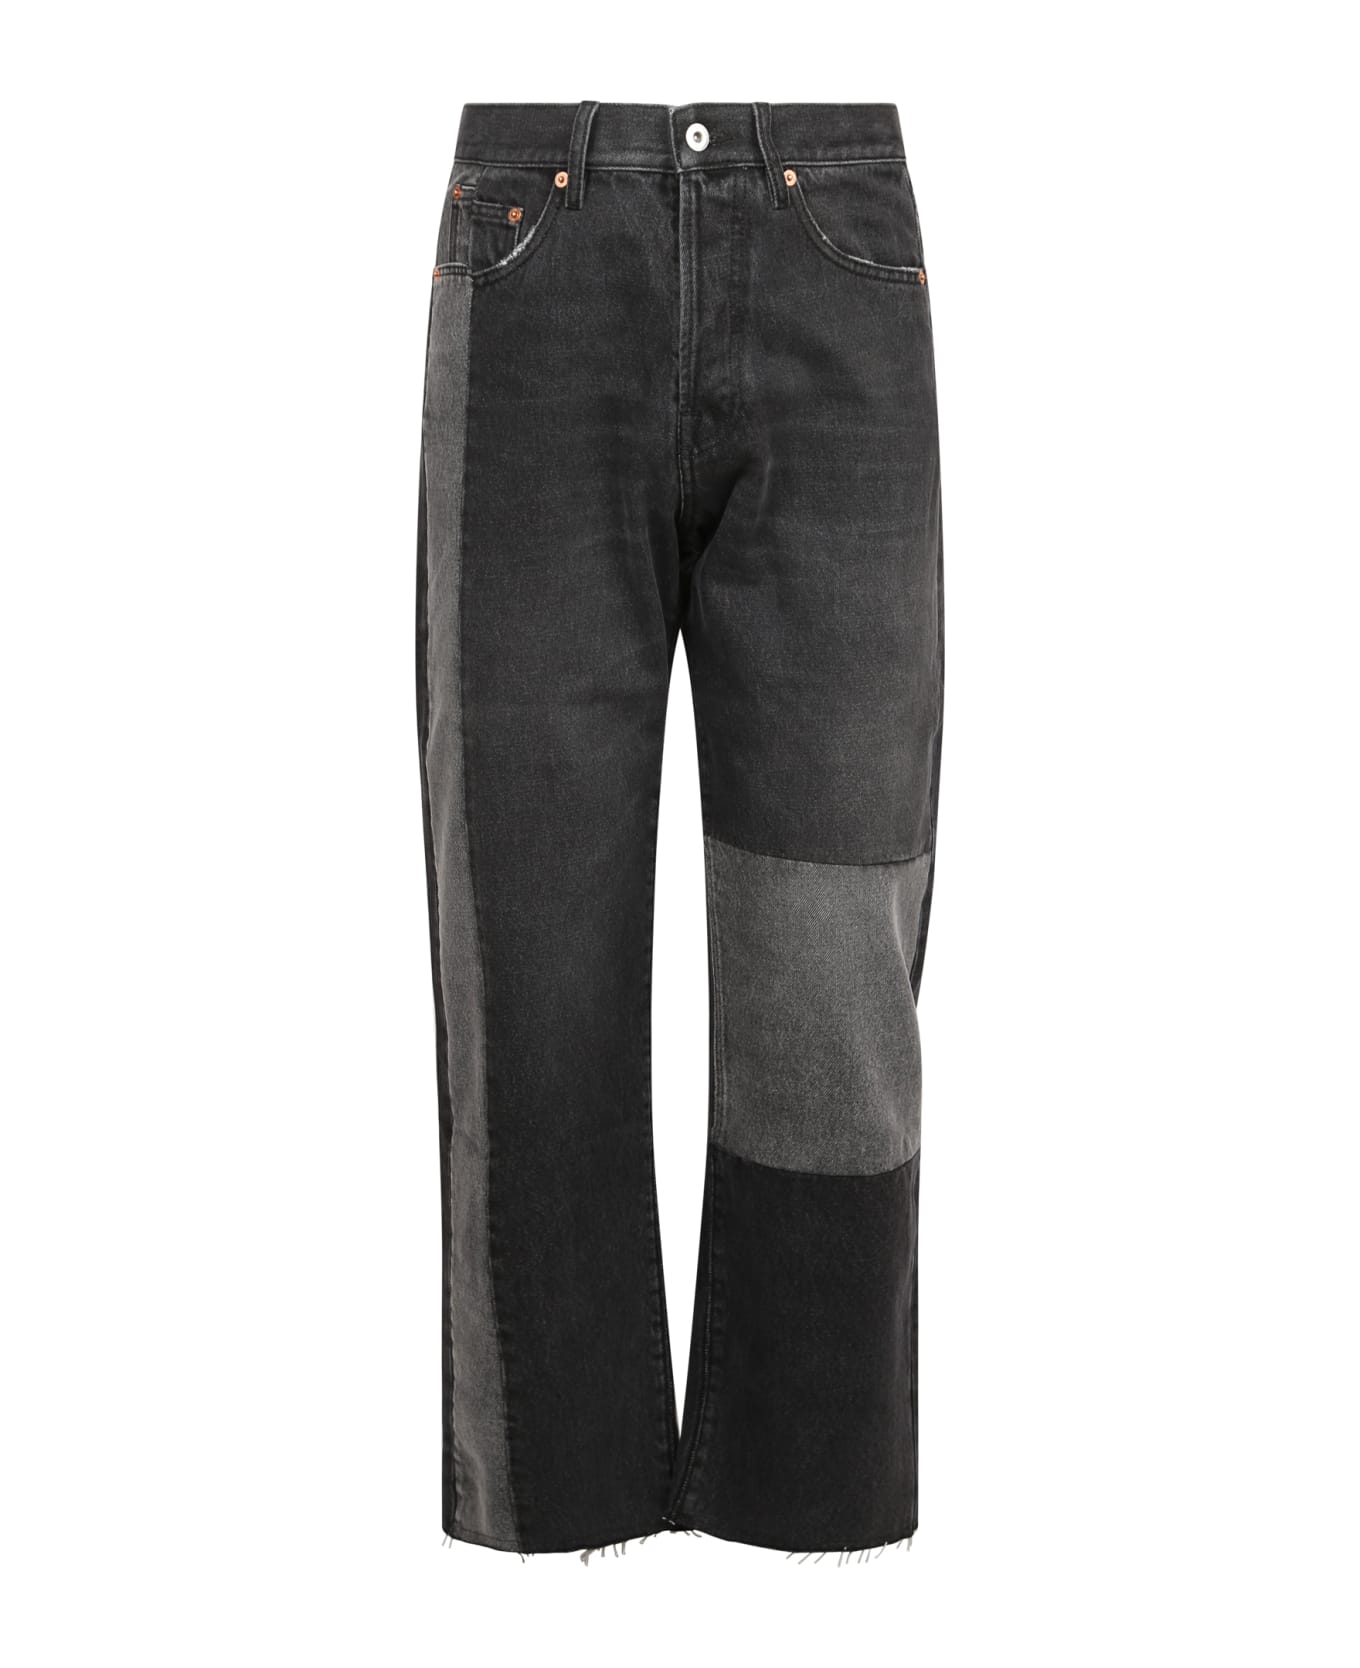 Valentino Jeans 5 Tasche Patch Grigio - Grey デニム